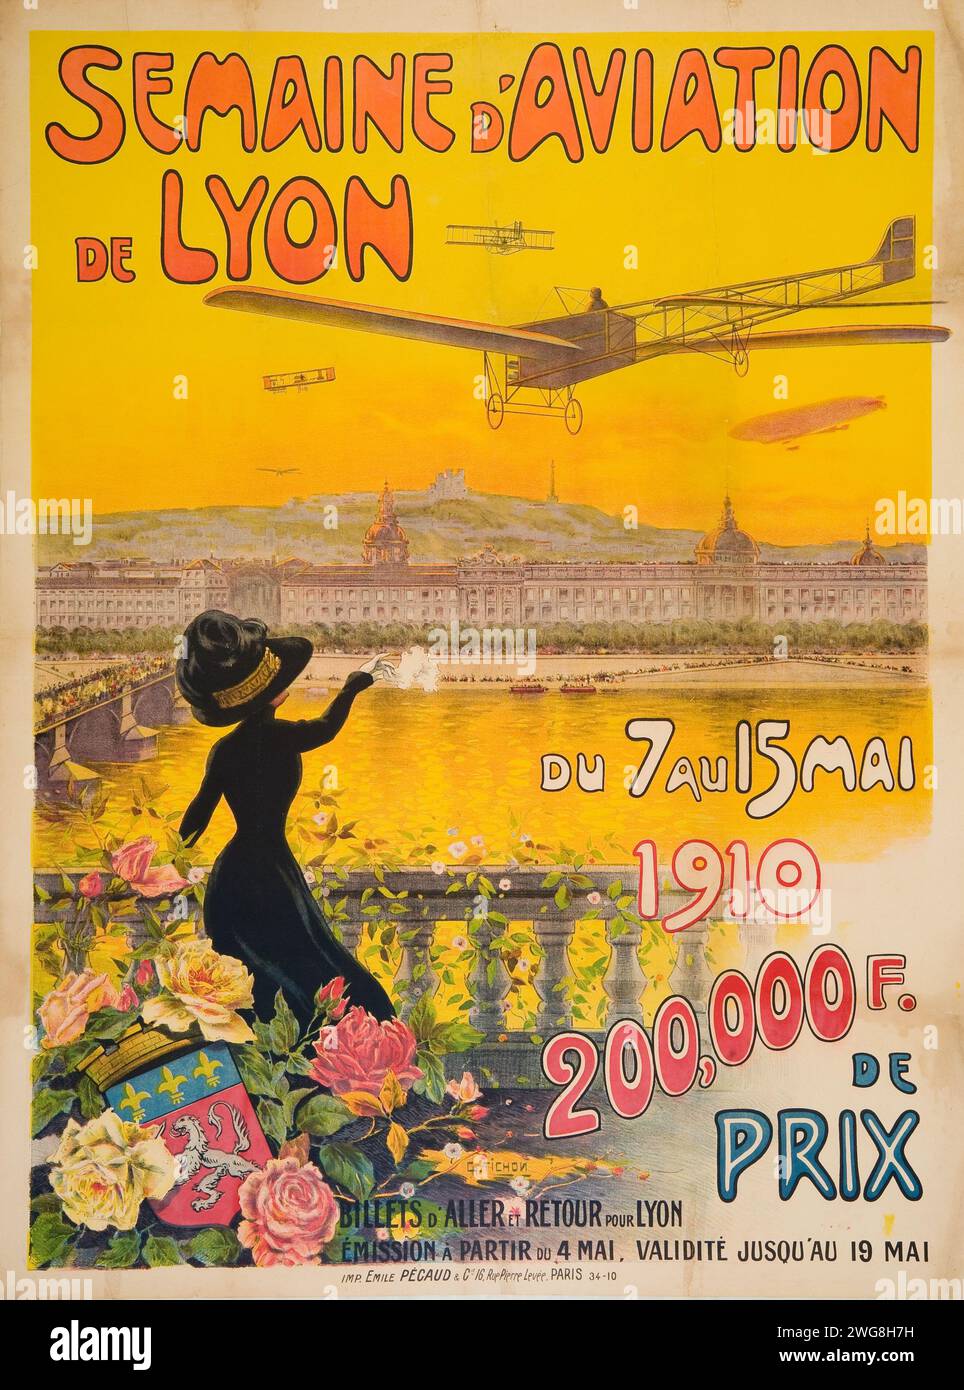 Semaine d'Aviation de Lyon, affiche de voyage vintage, Lyon France, 1910. Grande semaine de l'aviation lyonnaise en mai 1910. Imprimeur Emile Pecaud et cie, Banque D'Images